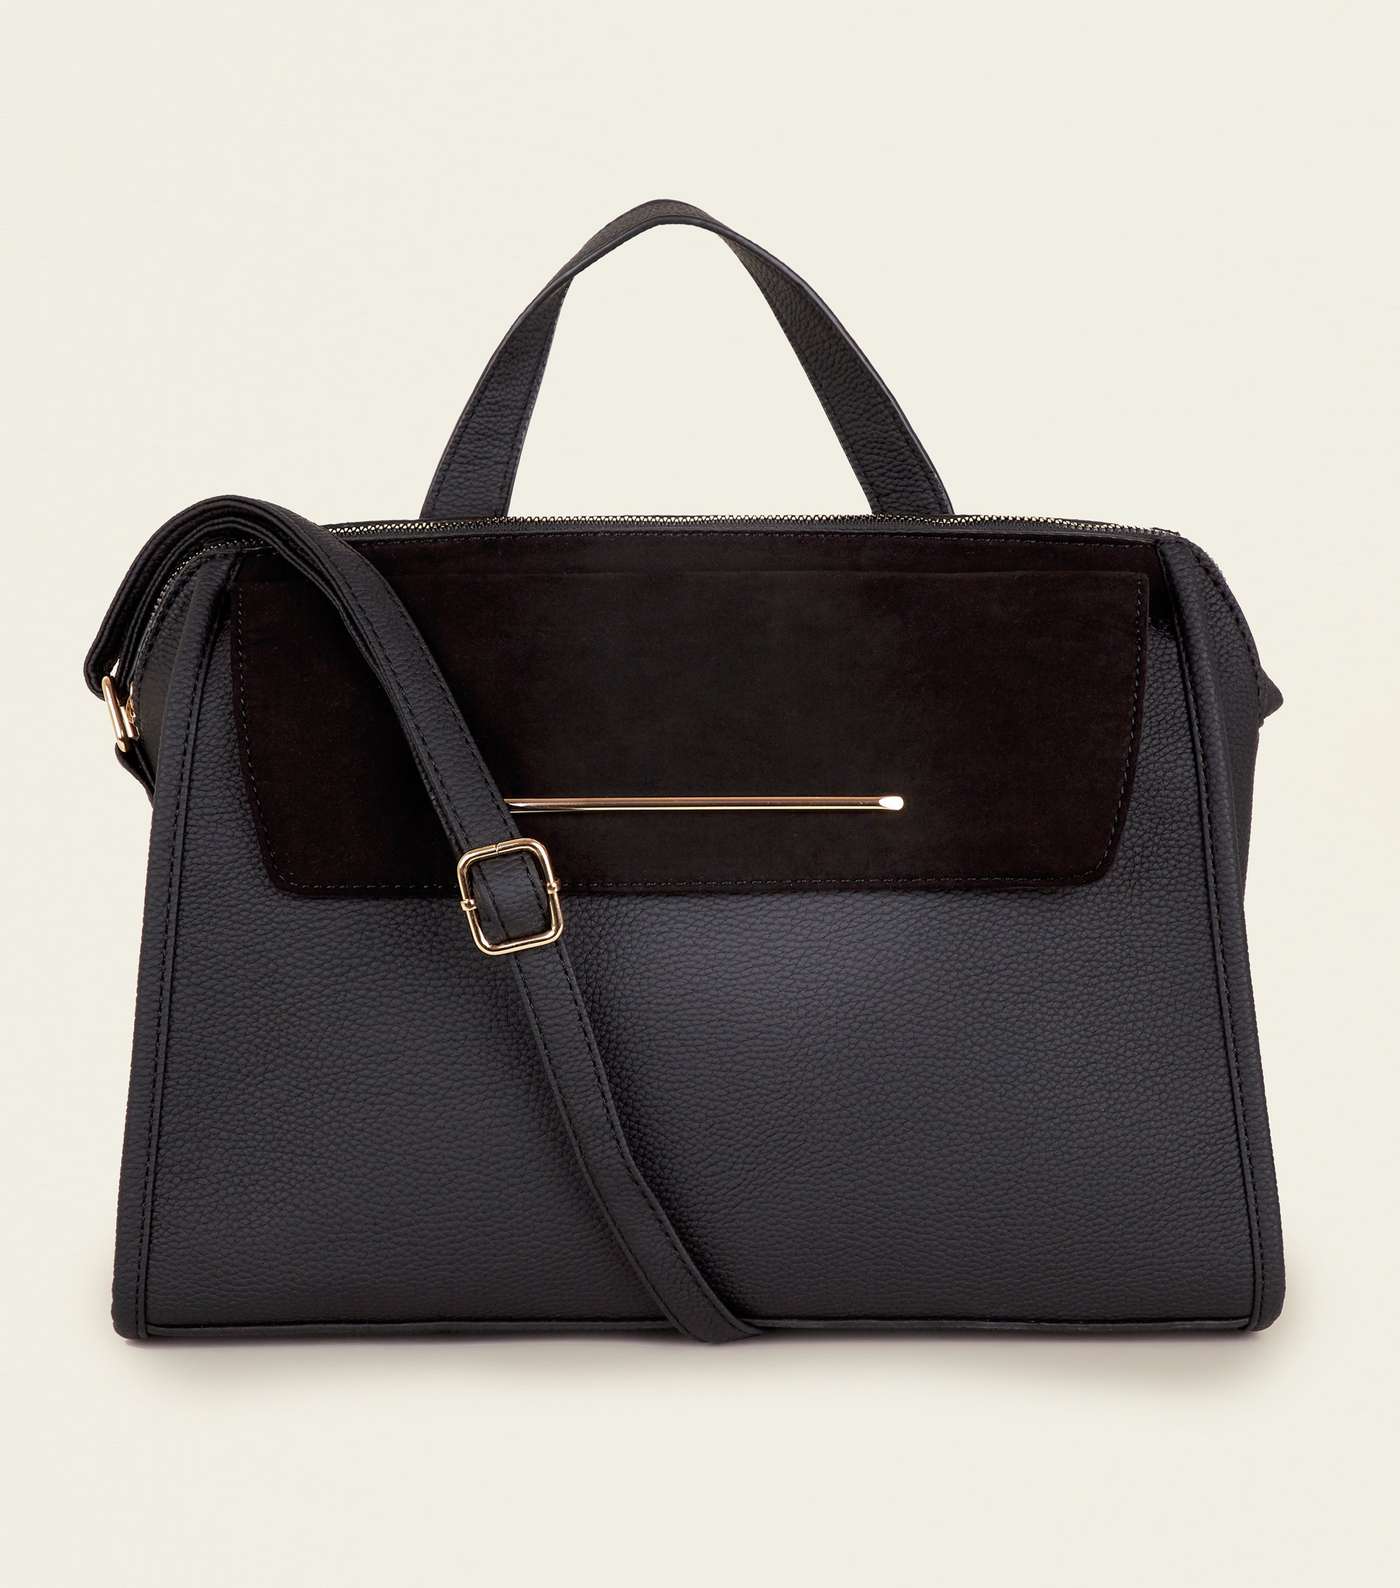 Black Leather-Look Top Handle Tote Bag